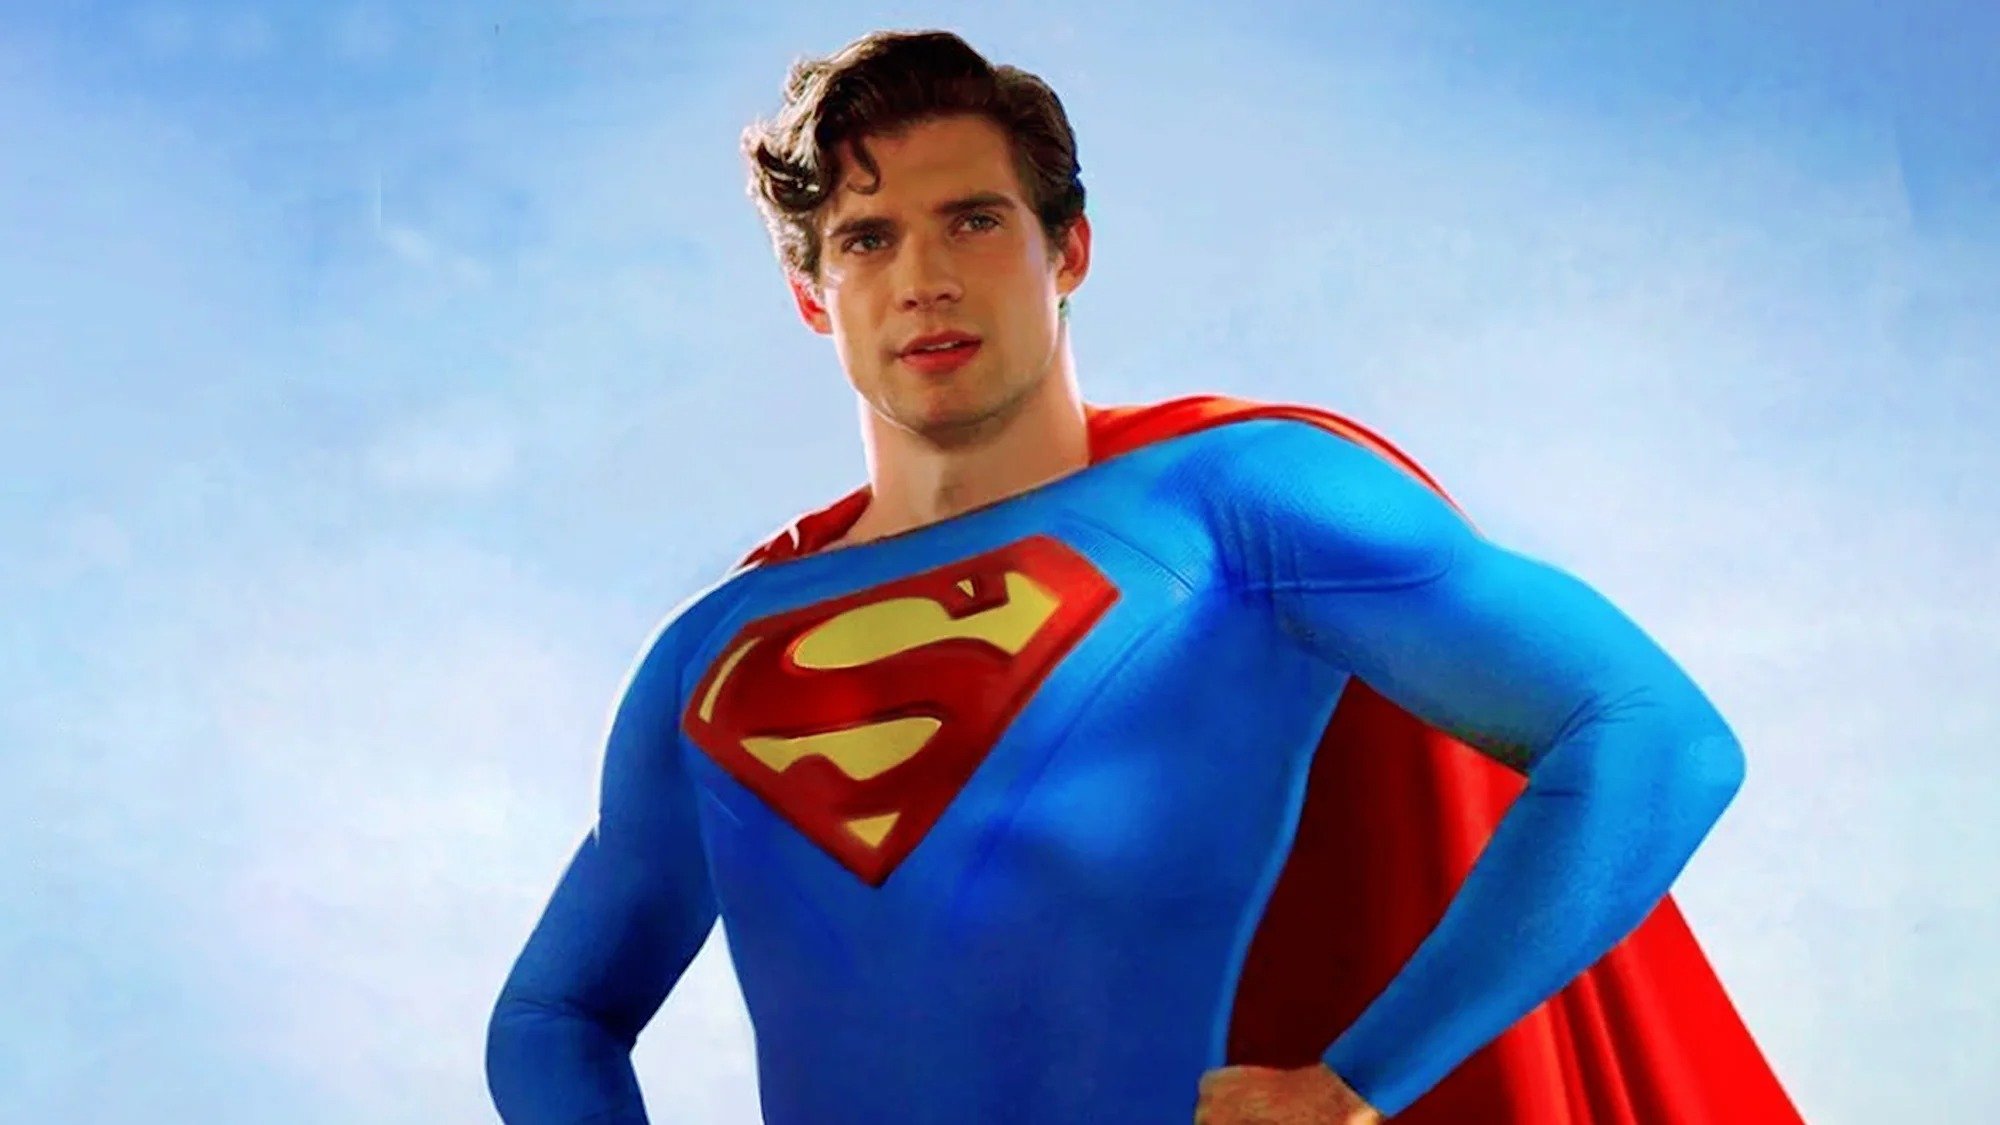 Superman Legacy : une image du héros en costume a leaké, Gunn réagit !